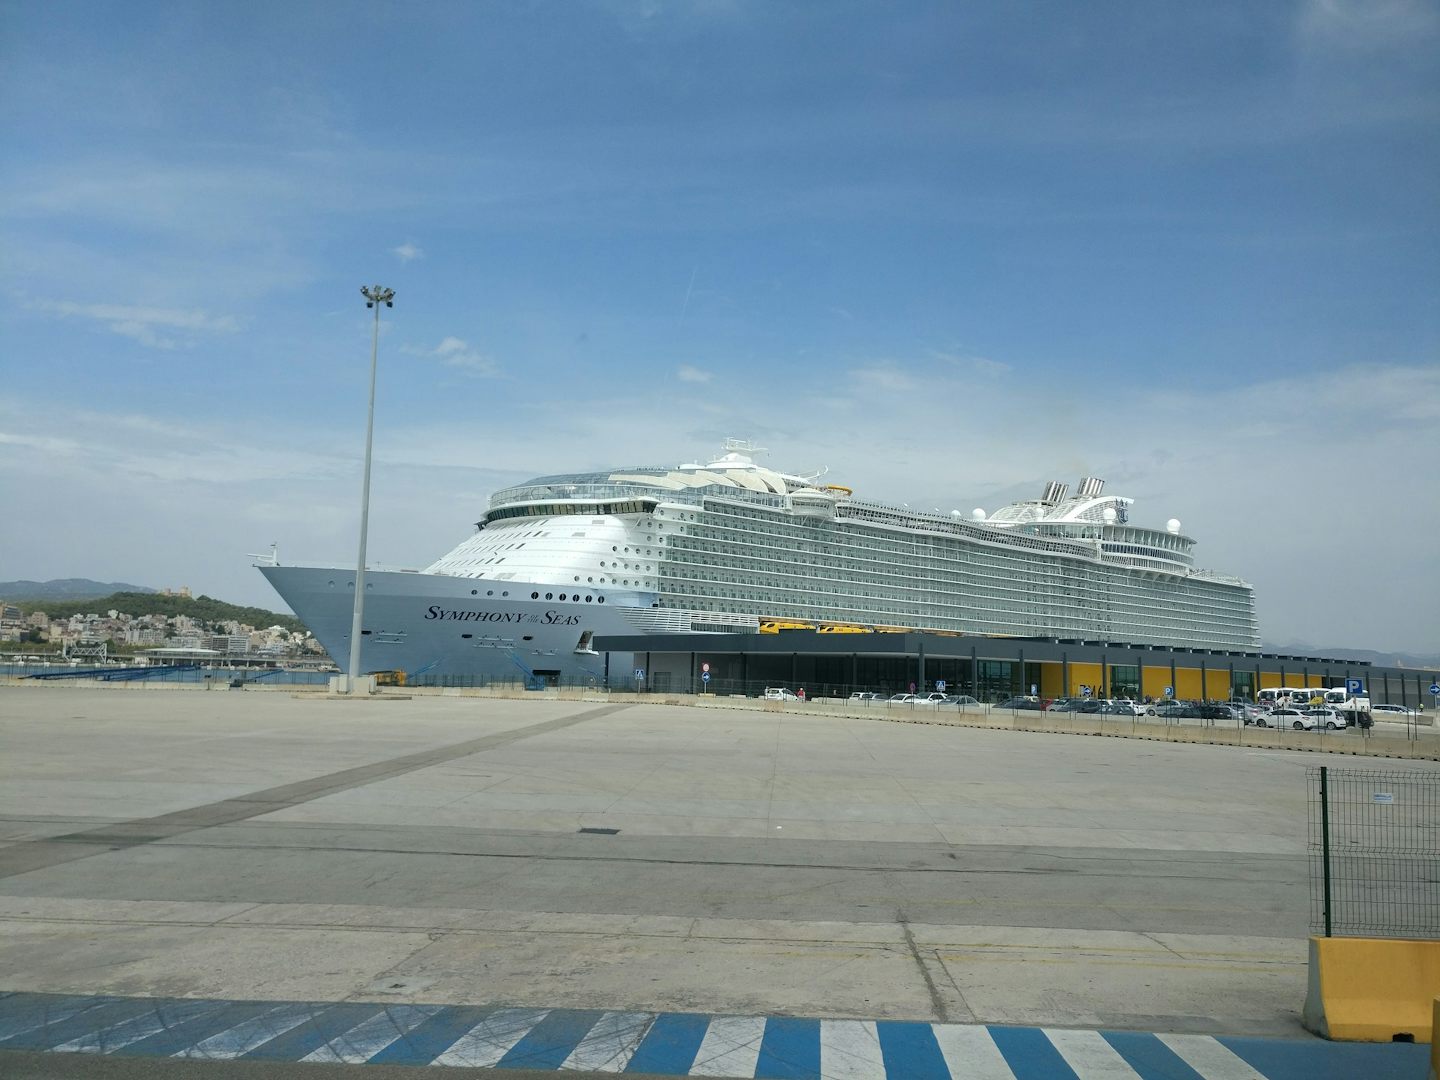 Symphony of the Seas docked in Palma de Mallorca